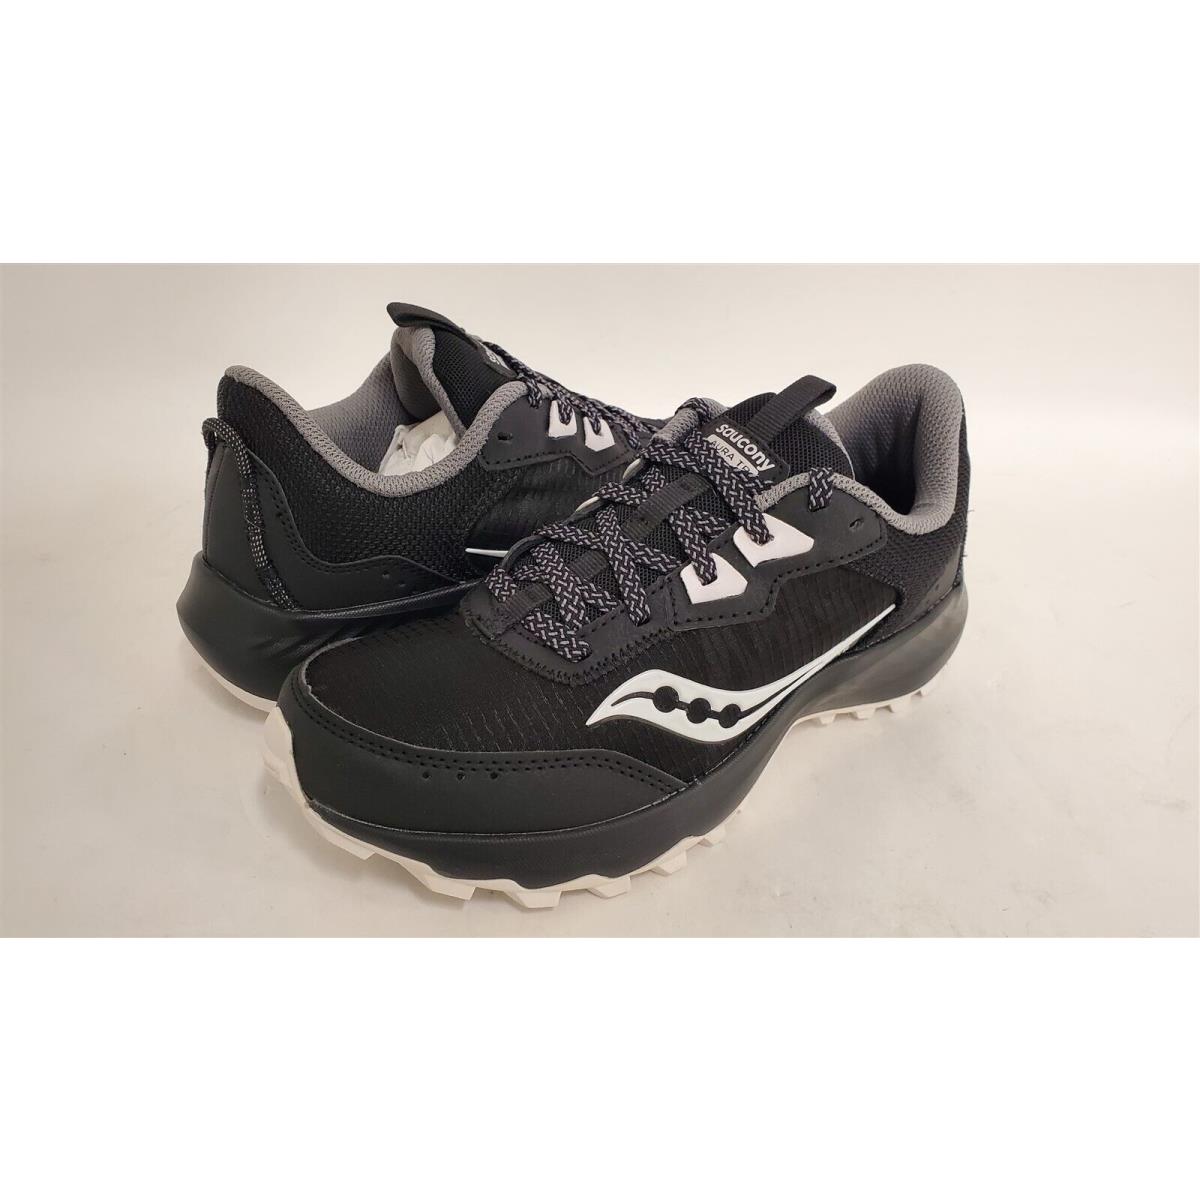 Saucony Women`s Aura TR Sneaker Shoes Black/fog 7.5 M US